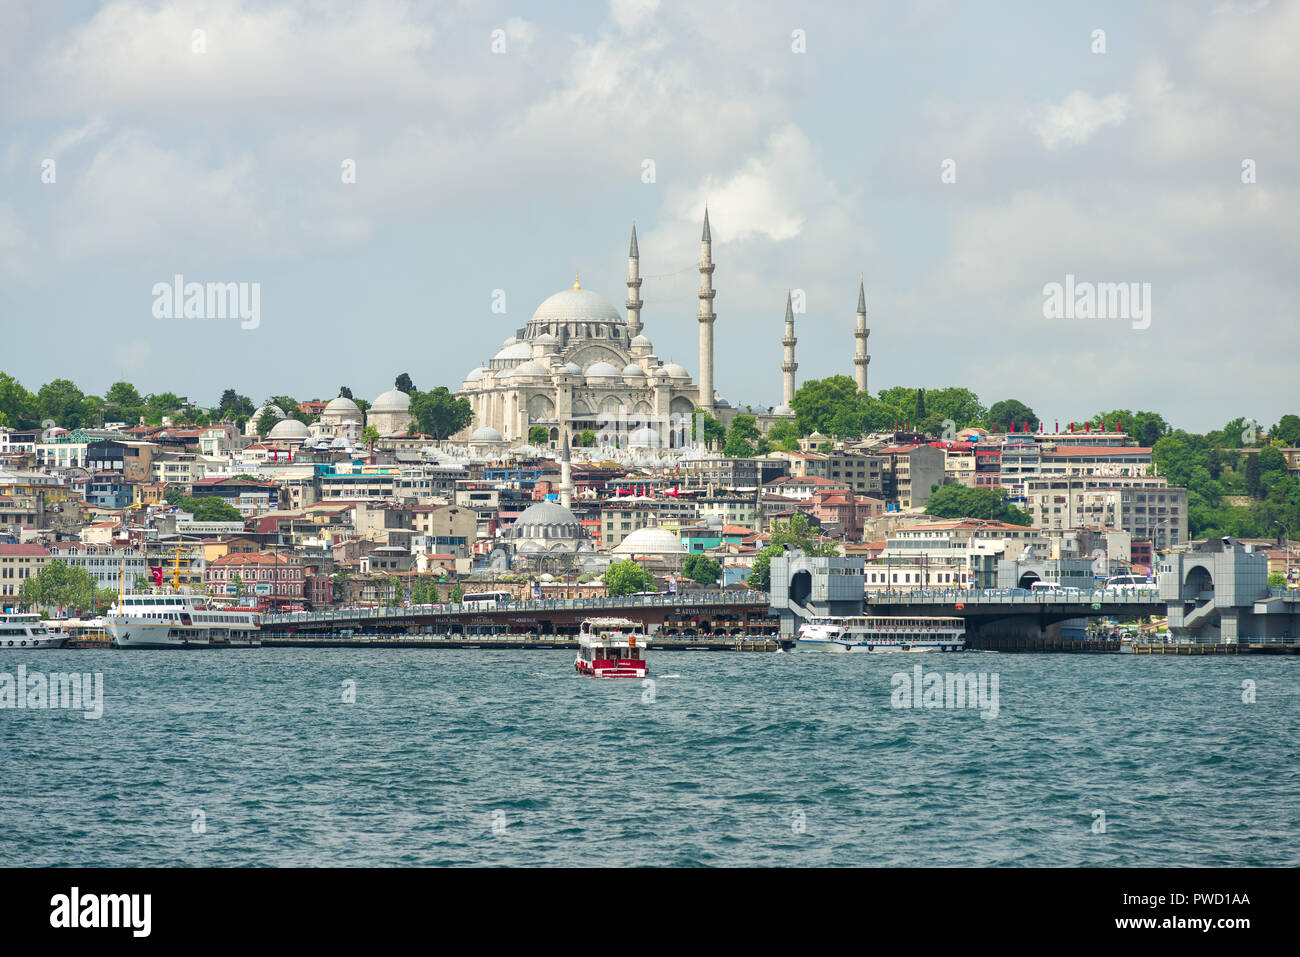 La moschea di Suleymaniye domina lo skyline del corno dorato con il Ponte di Galata, del Bosforo e i traghetti in primo piano, Istanbul, Turchia Foto Stock